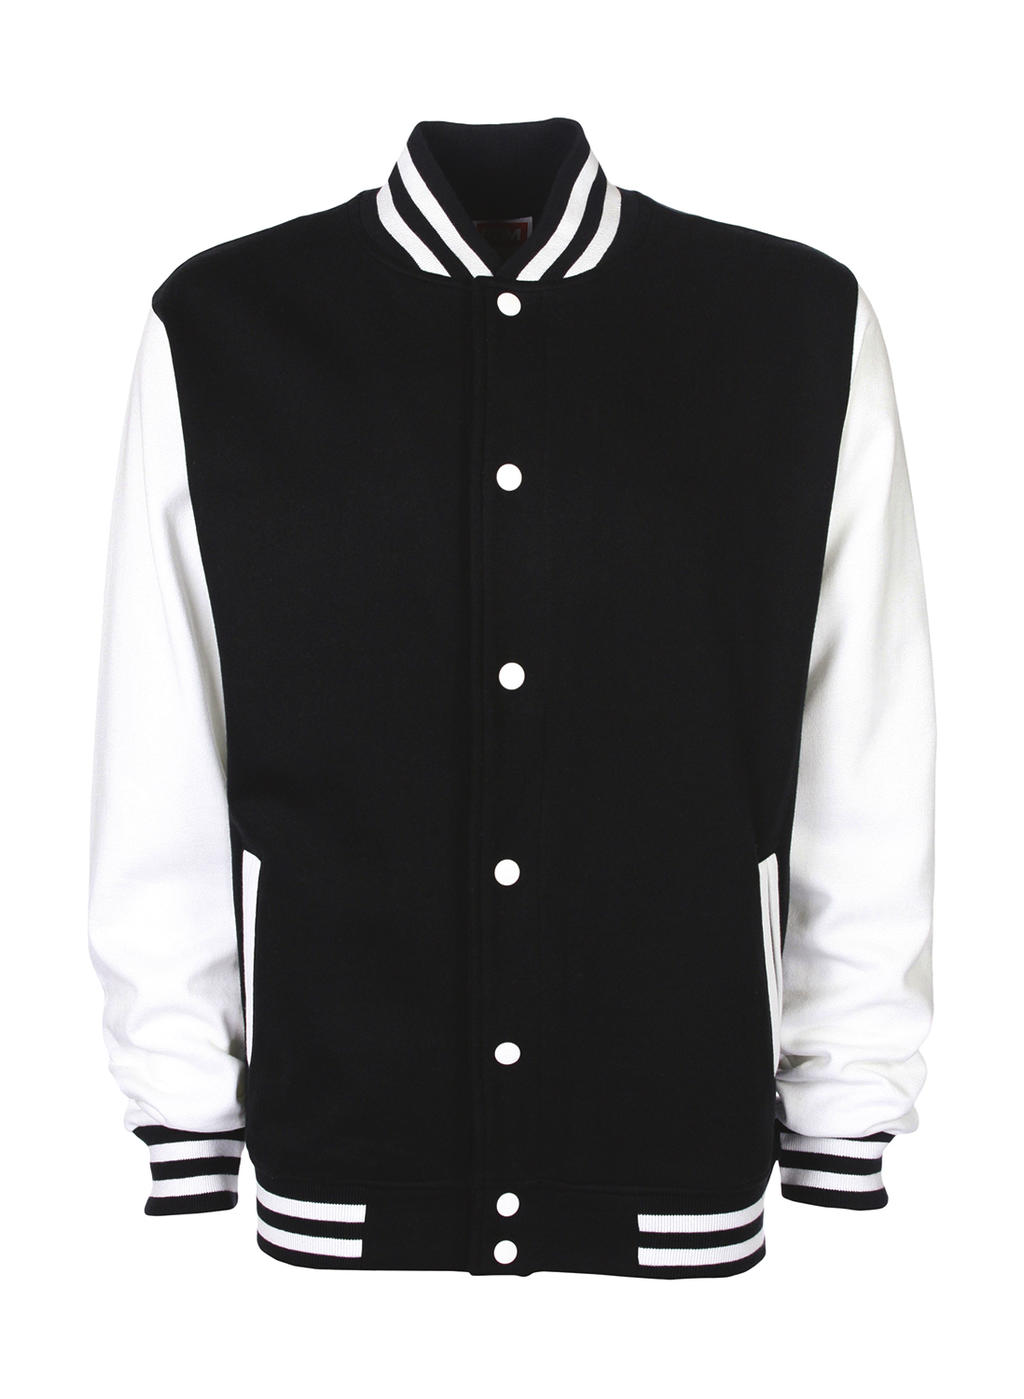  Varsity Jacket in Farbe Black/White